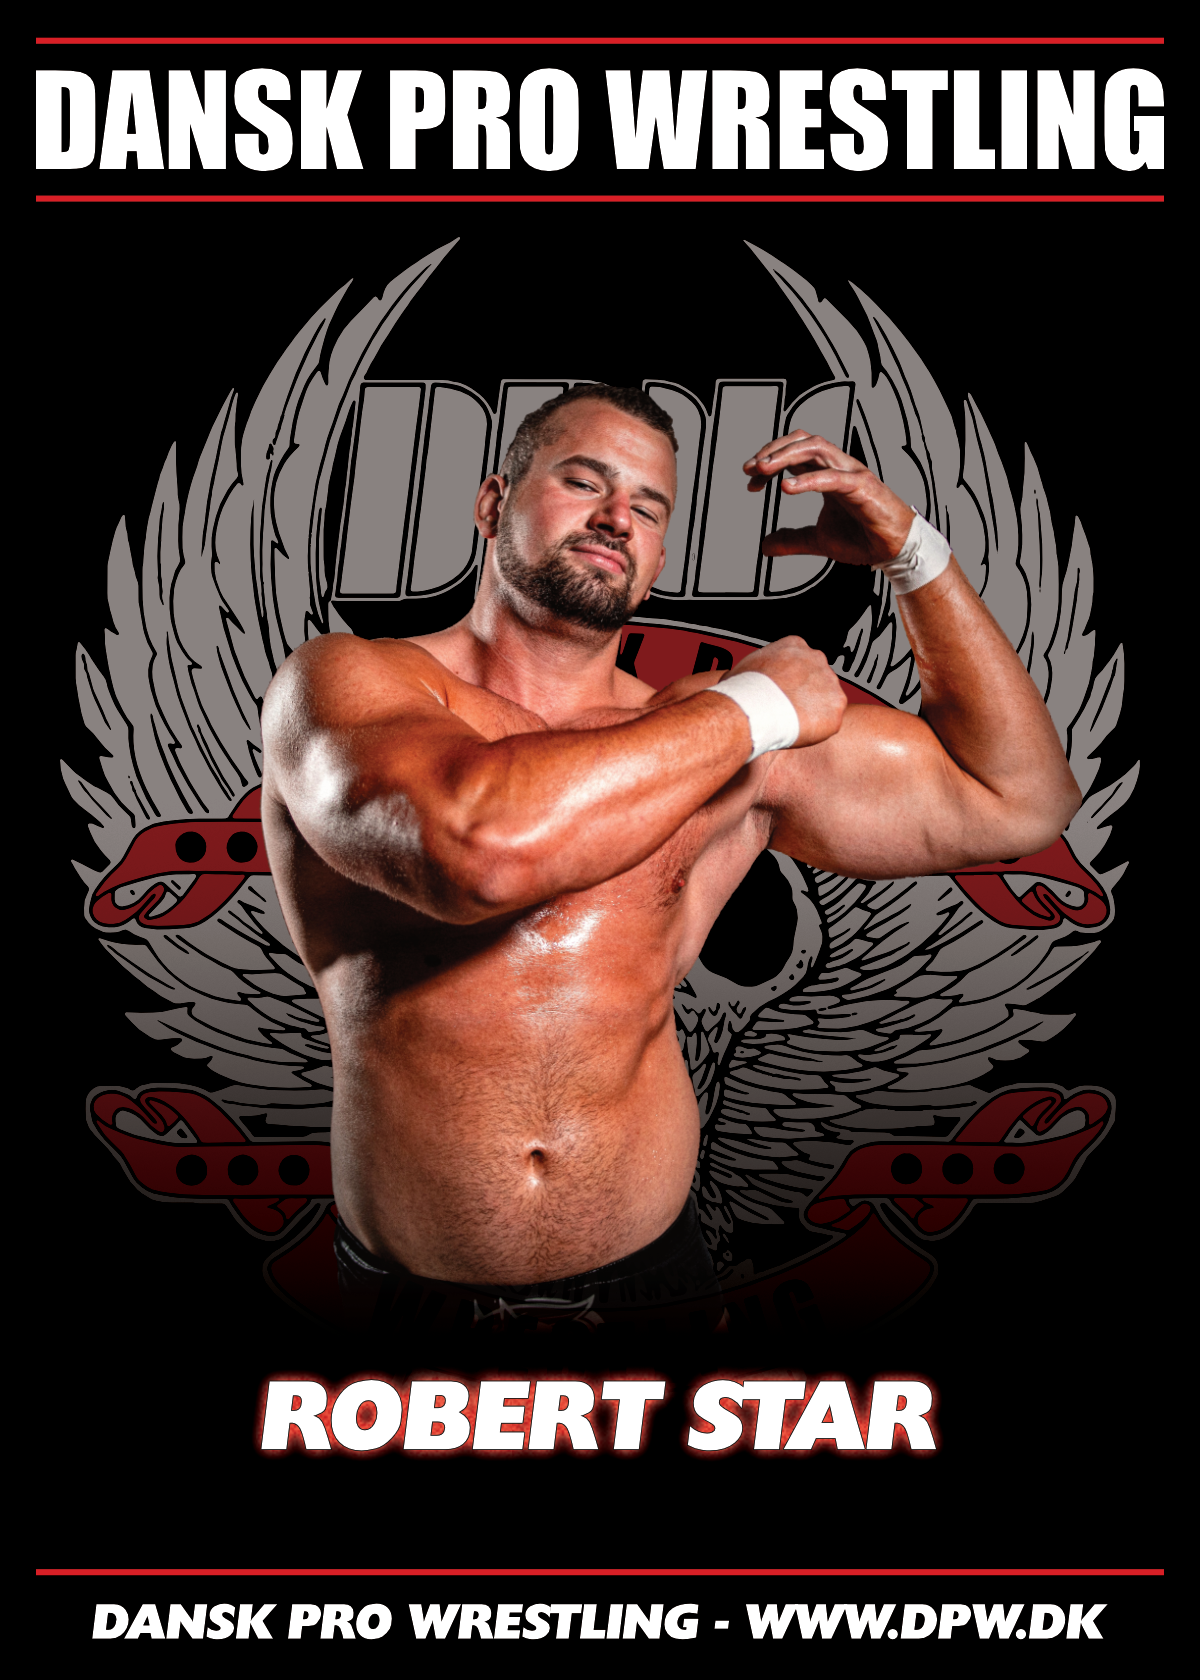 Robert Star